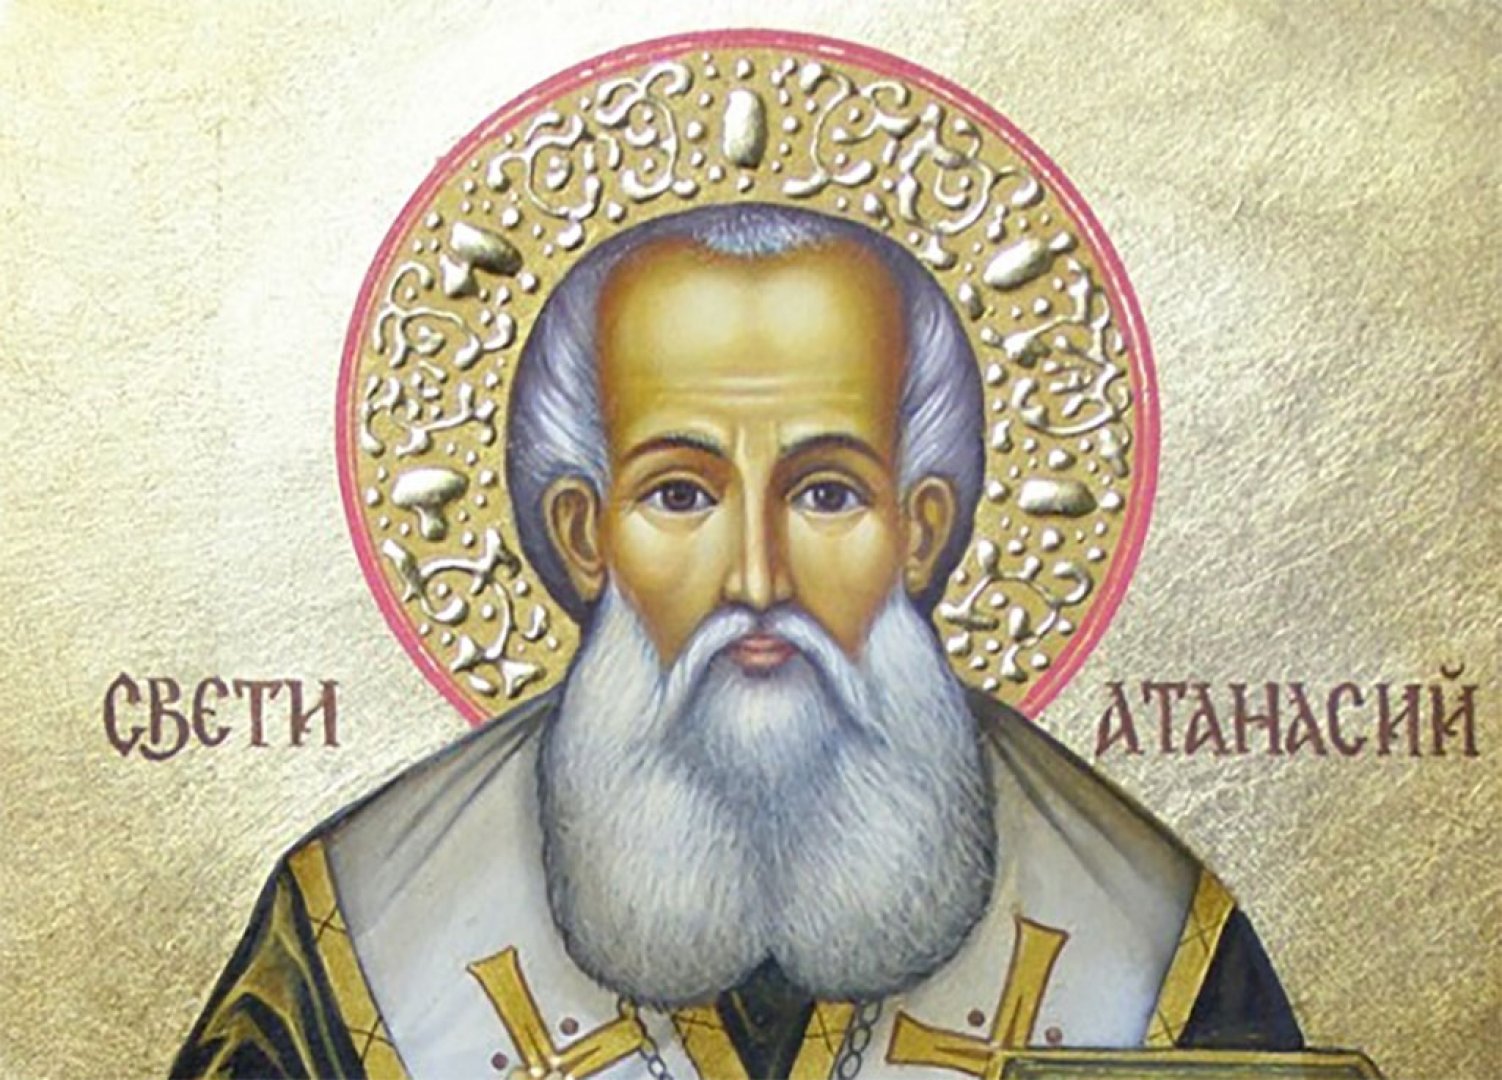 Свети Атанасий е велик изповедник и учител на Църквата, велик защитник на християнското учение за Боговъплъщението